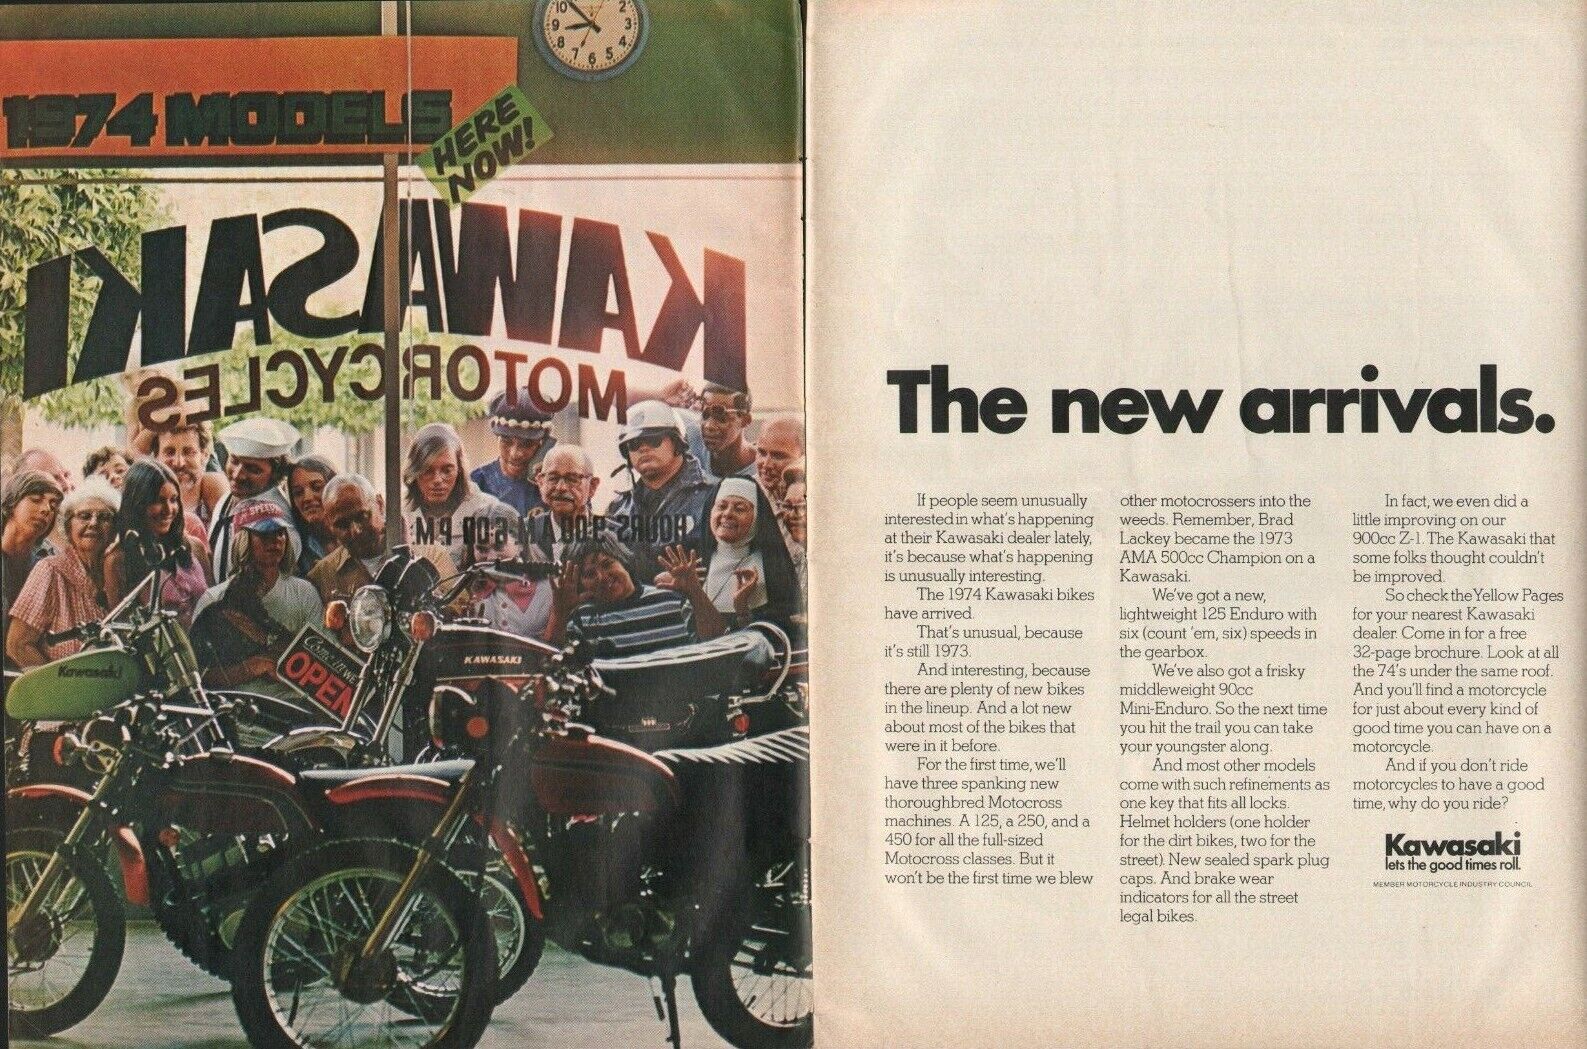 1974 Kawasaki - New Arrivals - 2-Page Vintage Motorcycle Ad